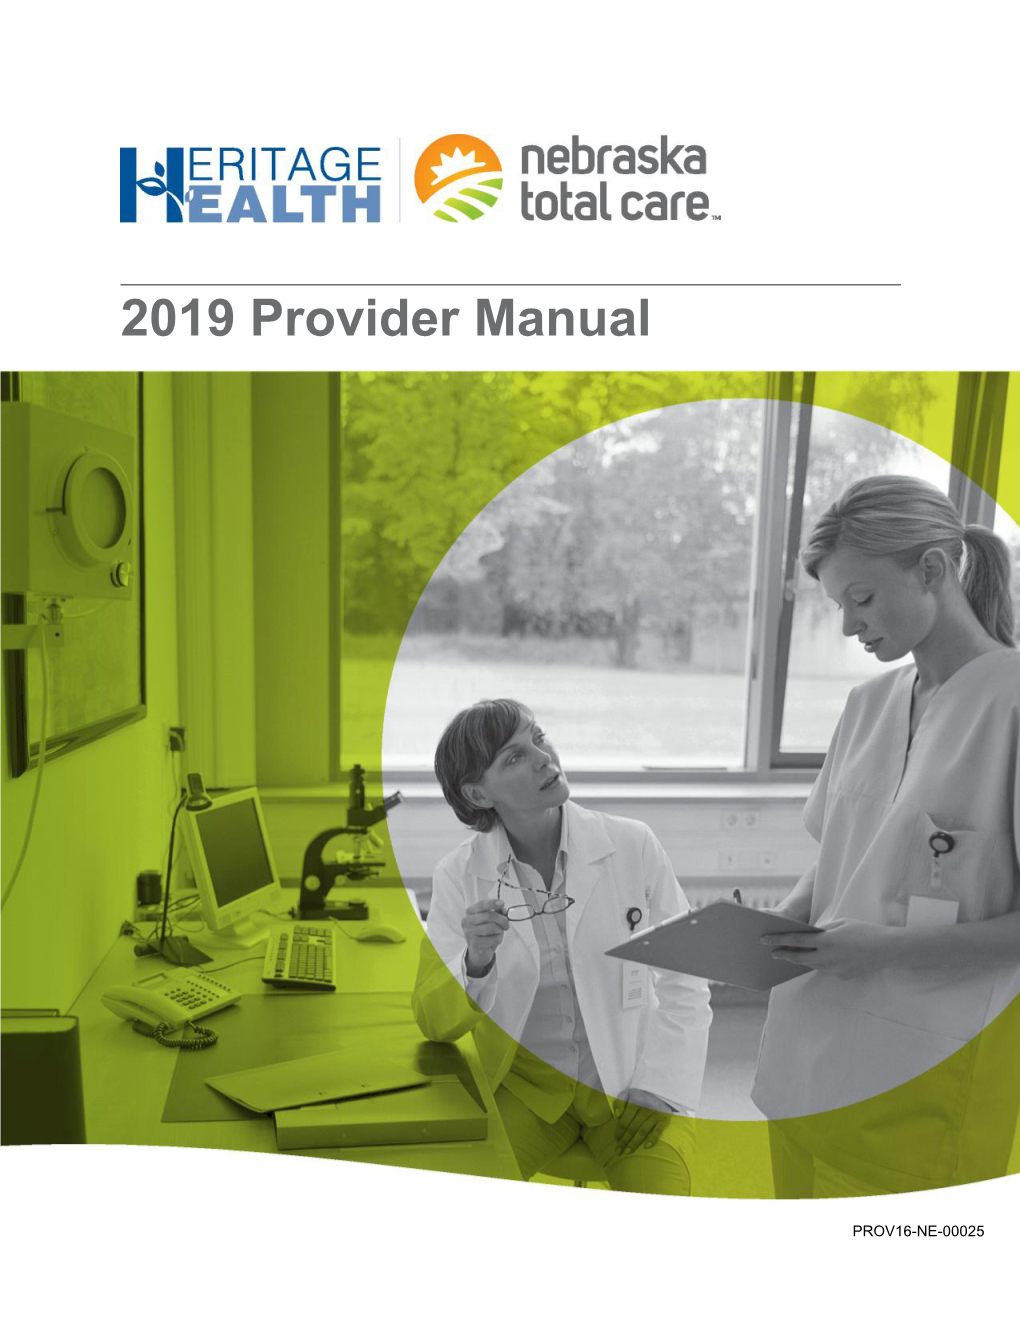 Nebraska Total Care Provider Manual